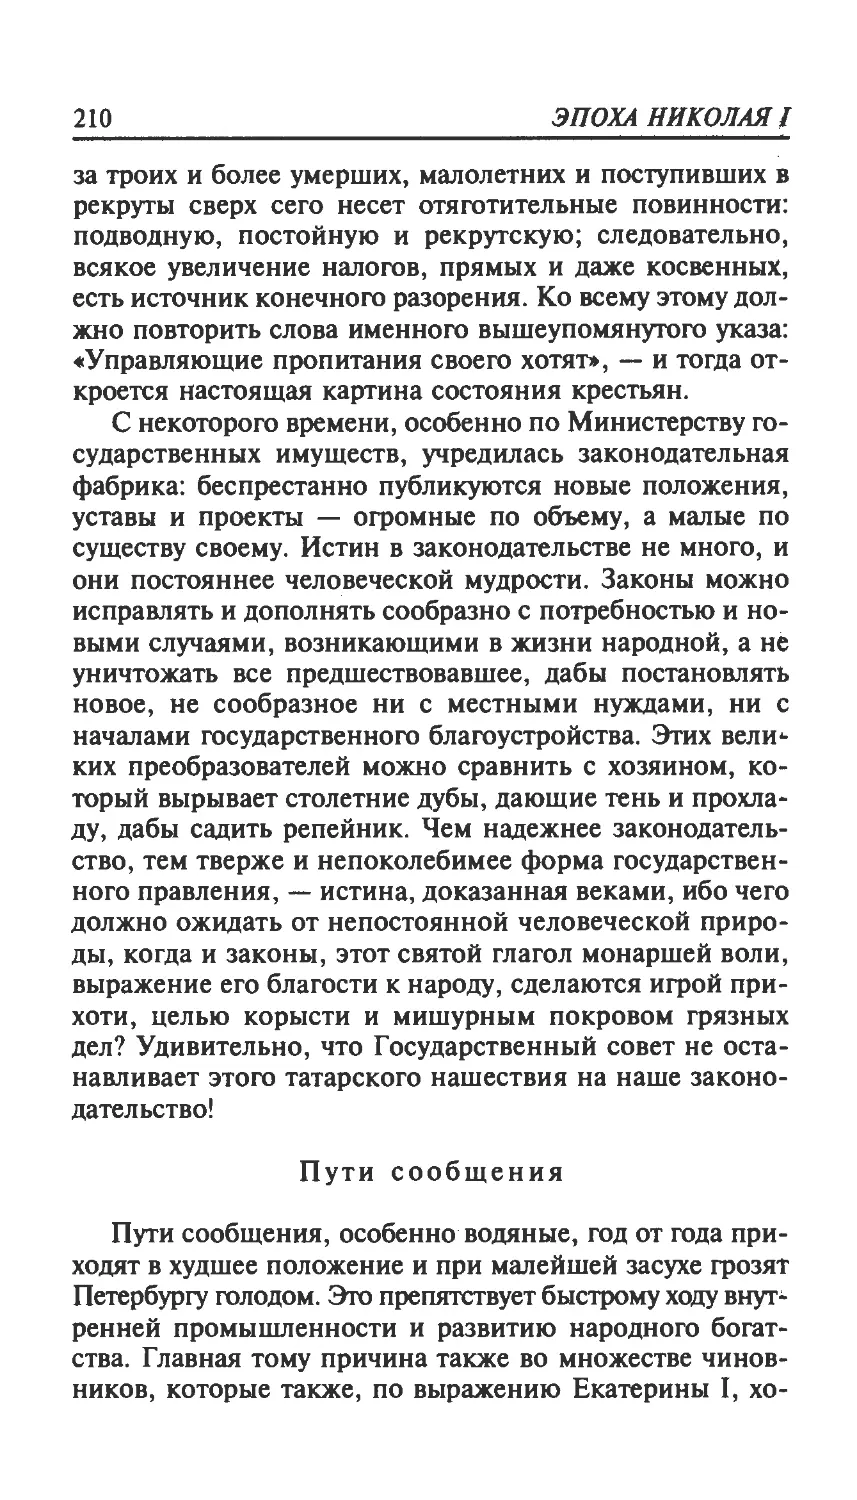 николай_page0106_1L